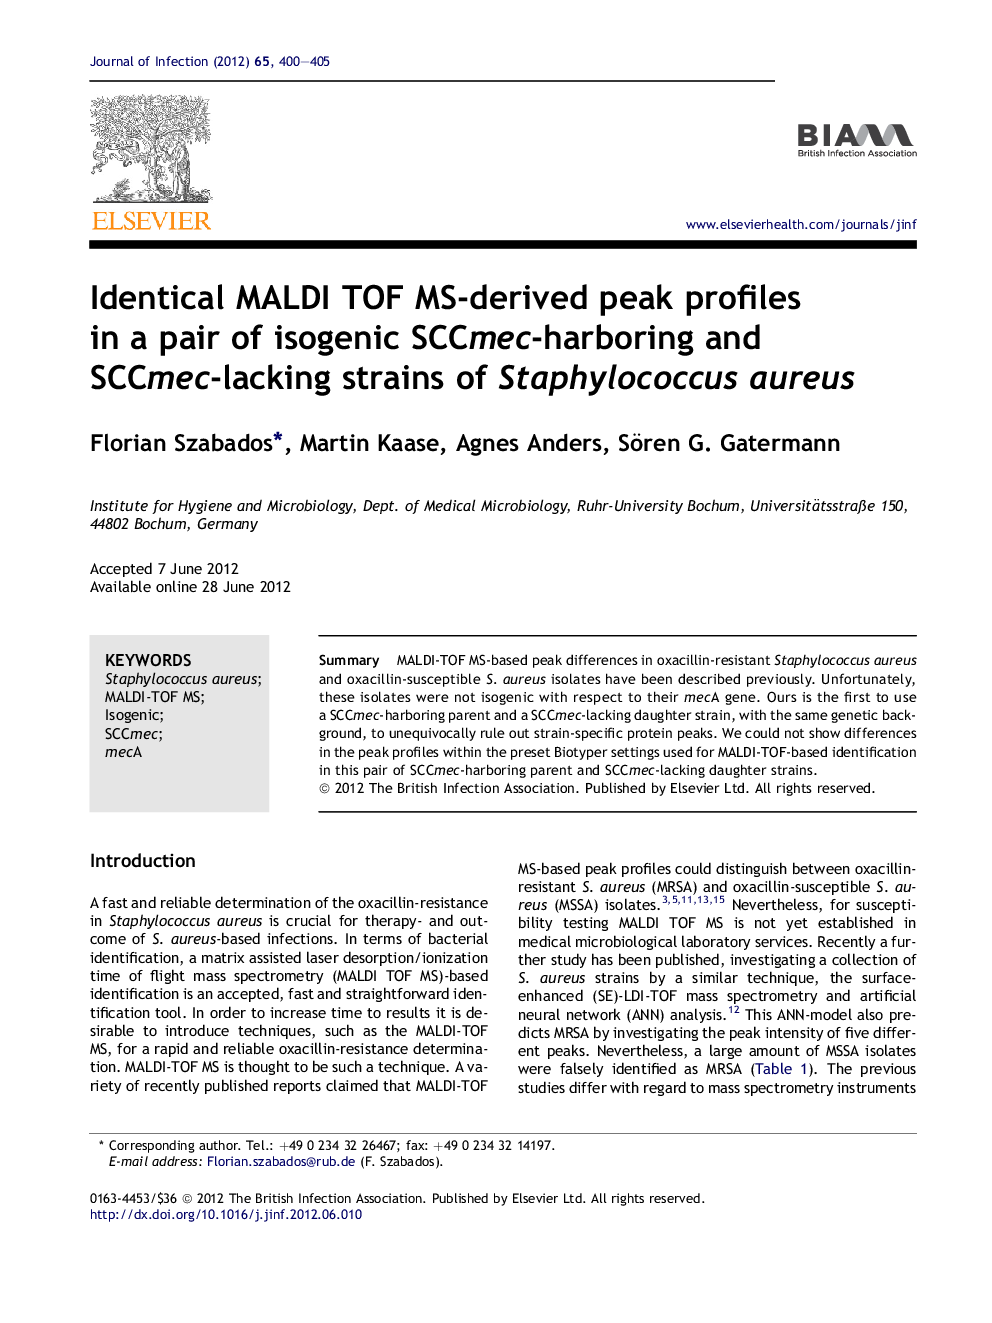 Identical MALDI TOF MS-derived peak profiles in a pair of isogenic SCCmec-harboring and SCCmec-lacking strains of Staphylococcus aureus